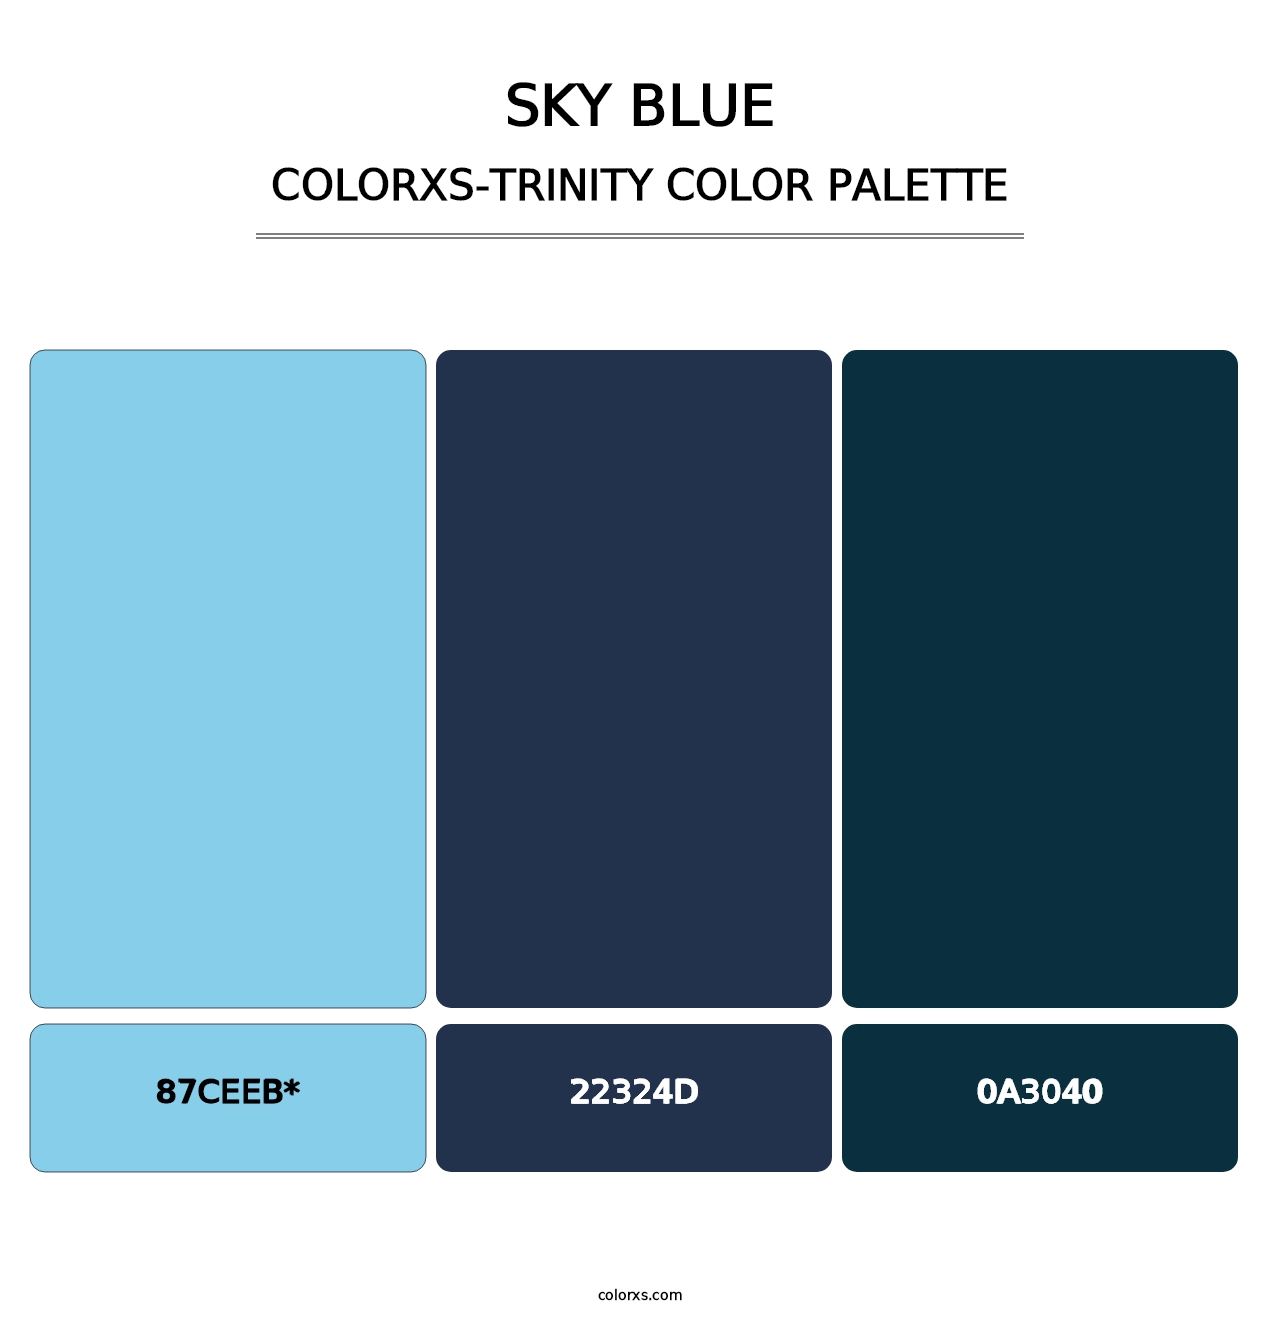 Sky blue - Colorxs Trinity Palette